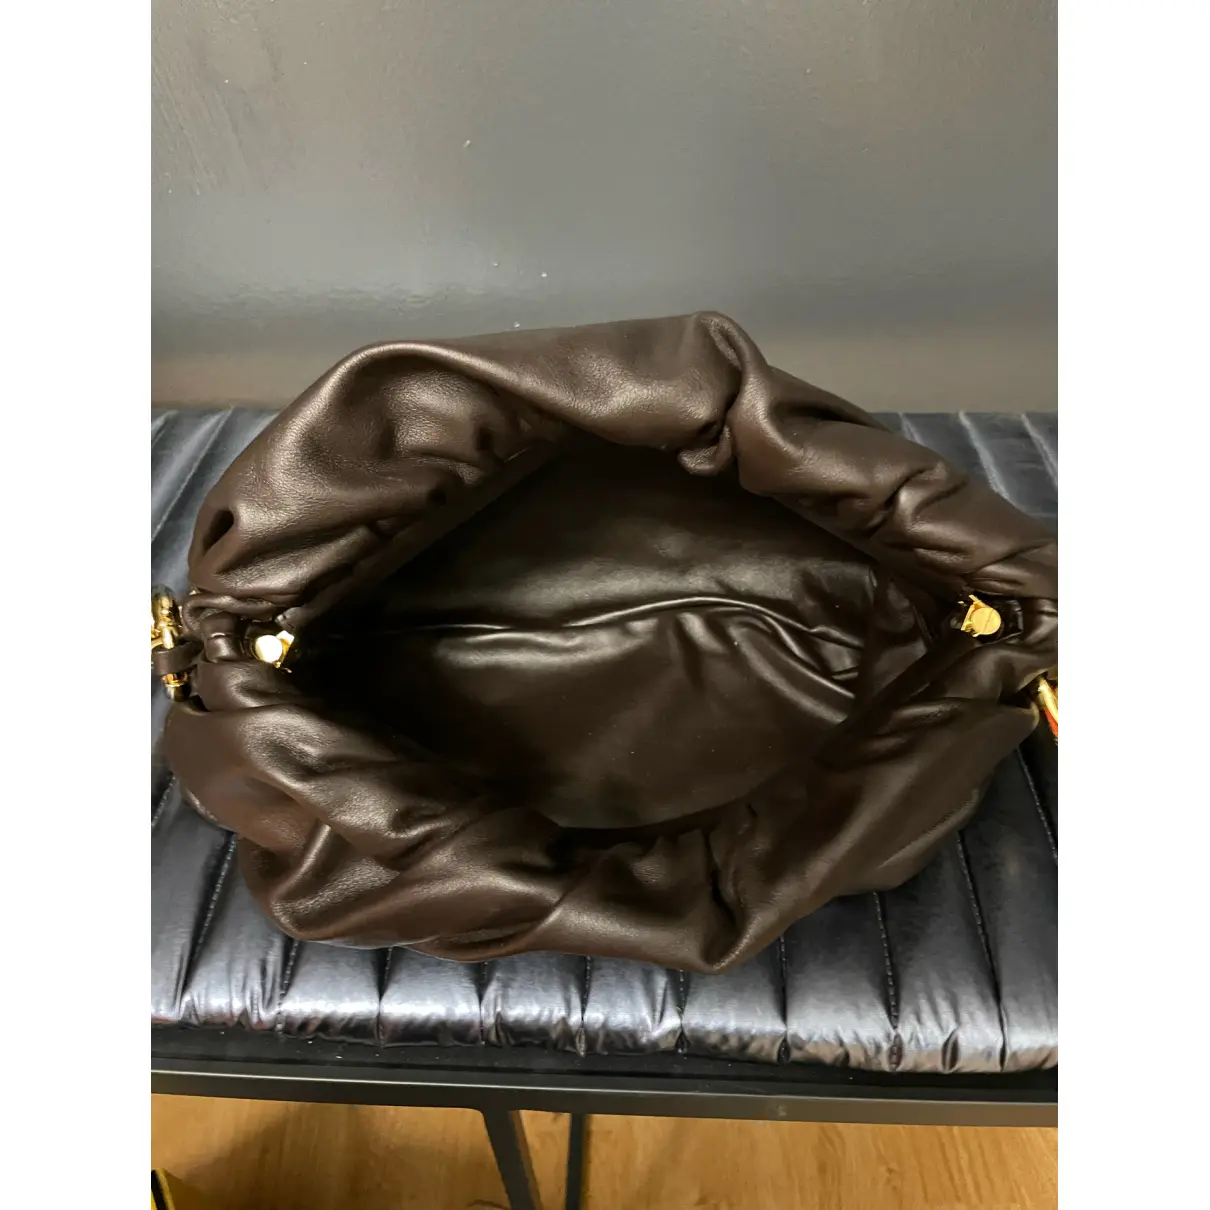 Chain Pouch leather handbag Bottega Veneta